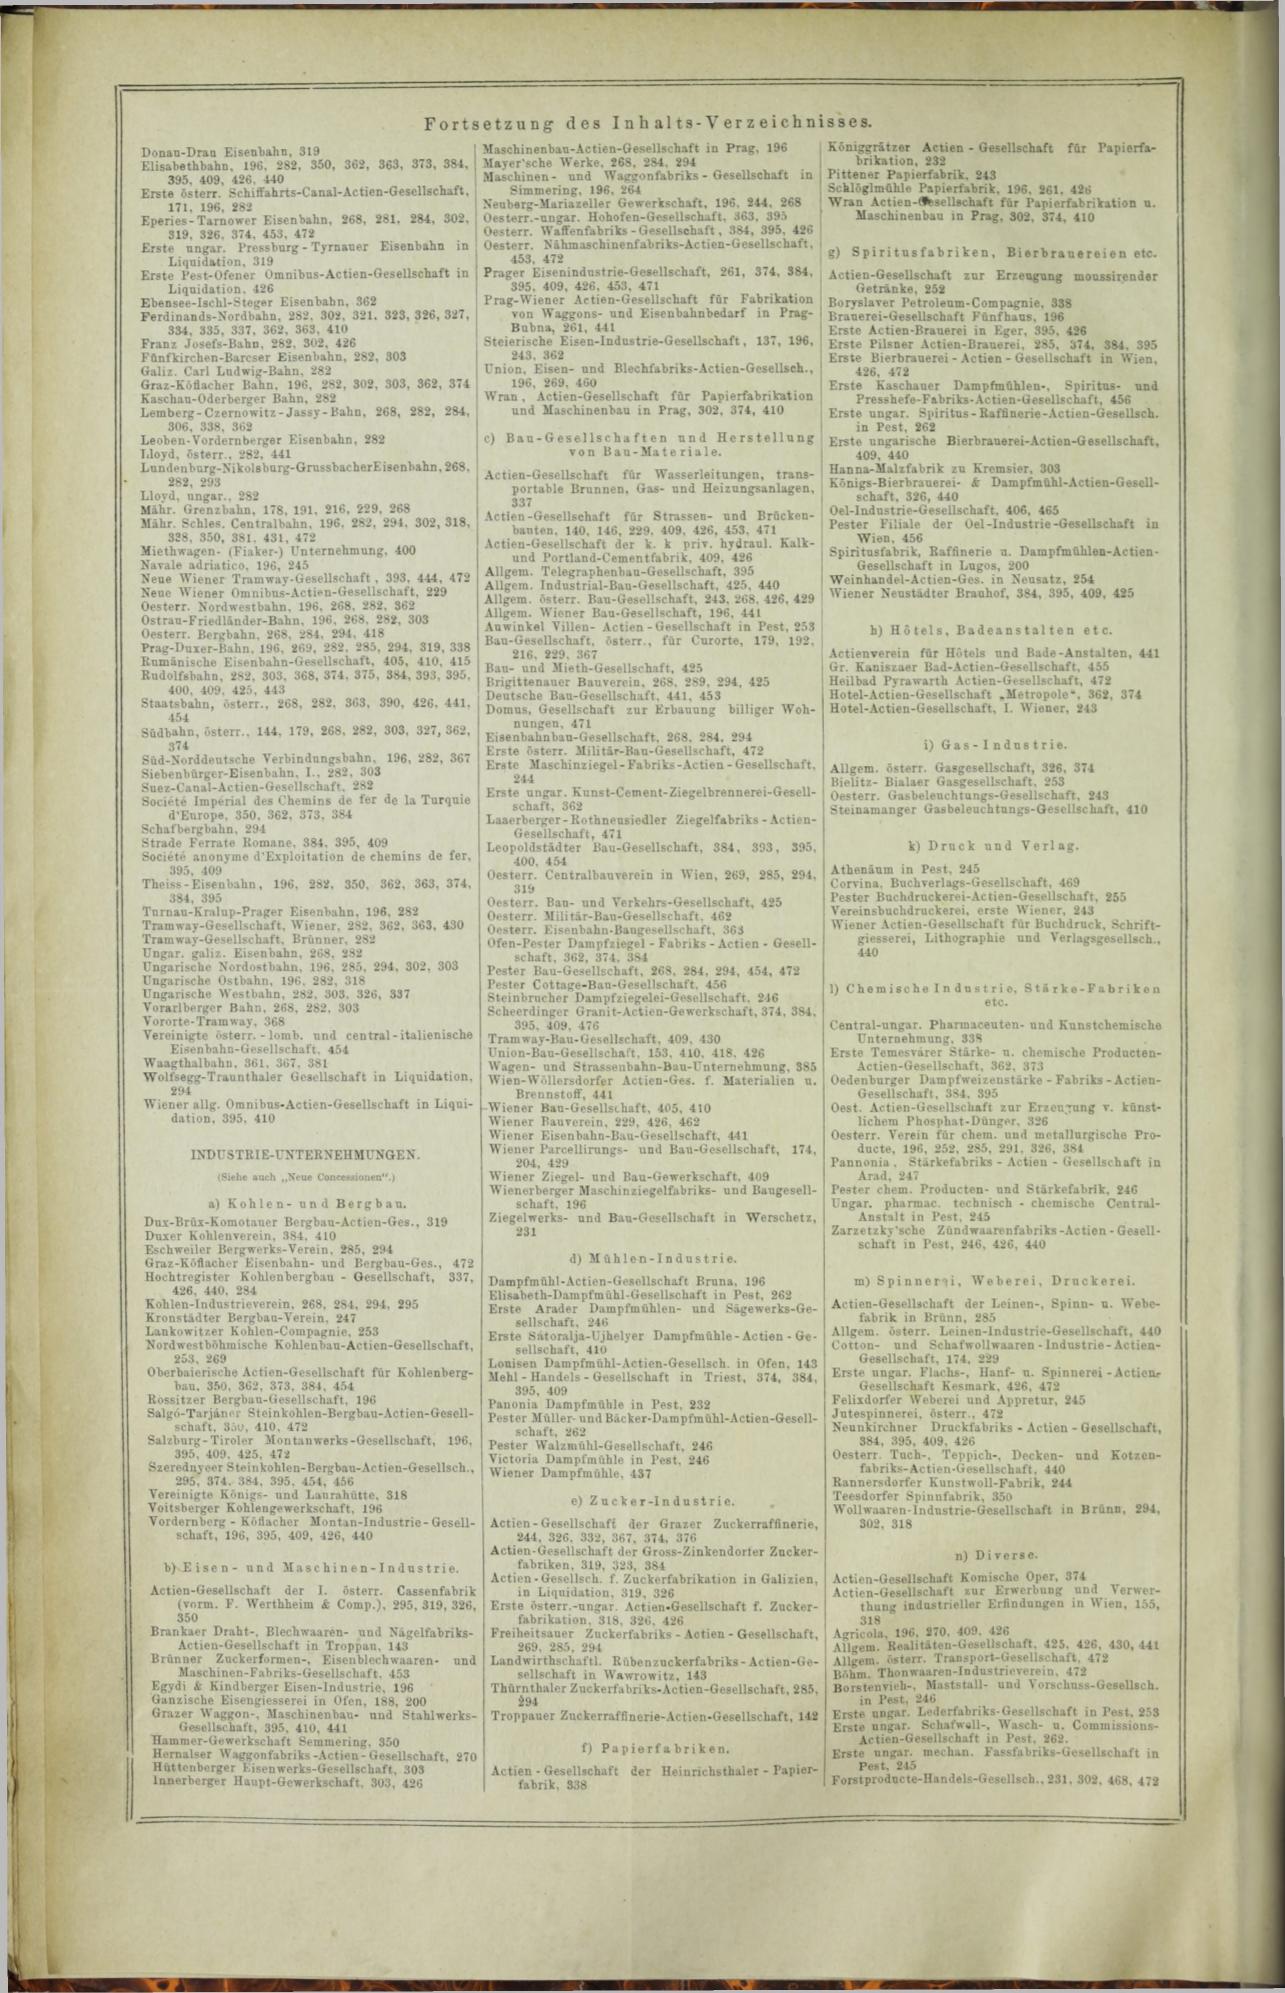 Der Tresor 24.07.1872 - Seite 16